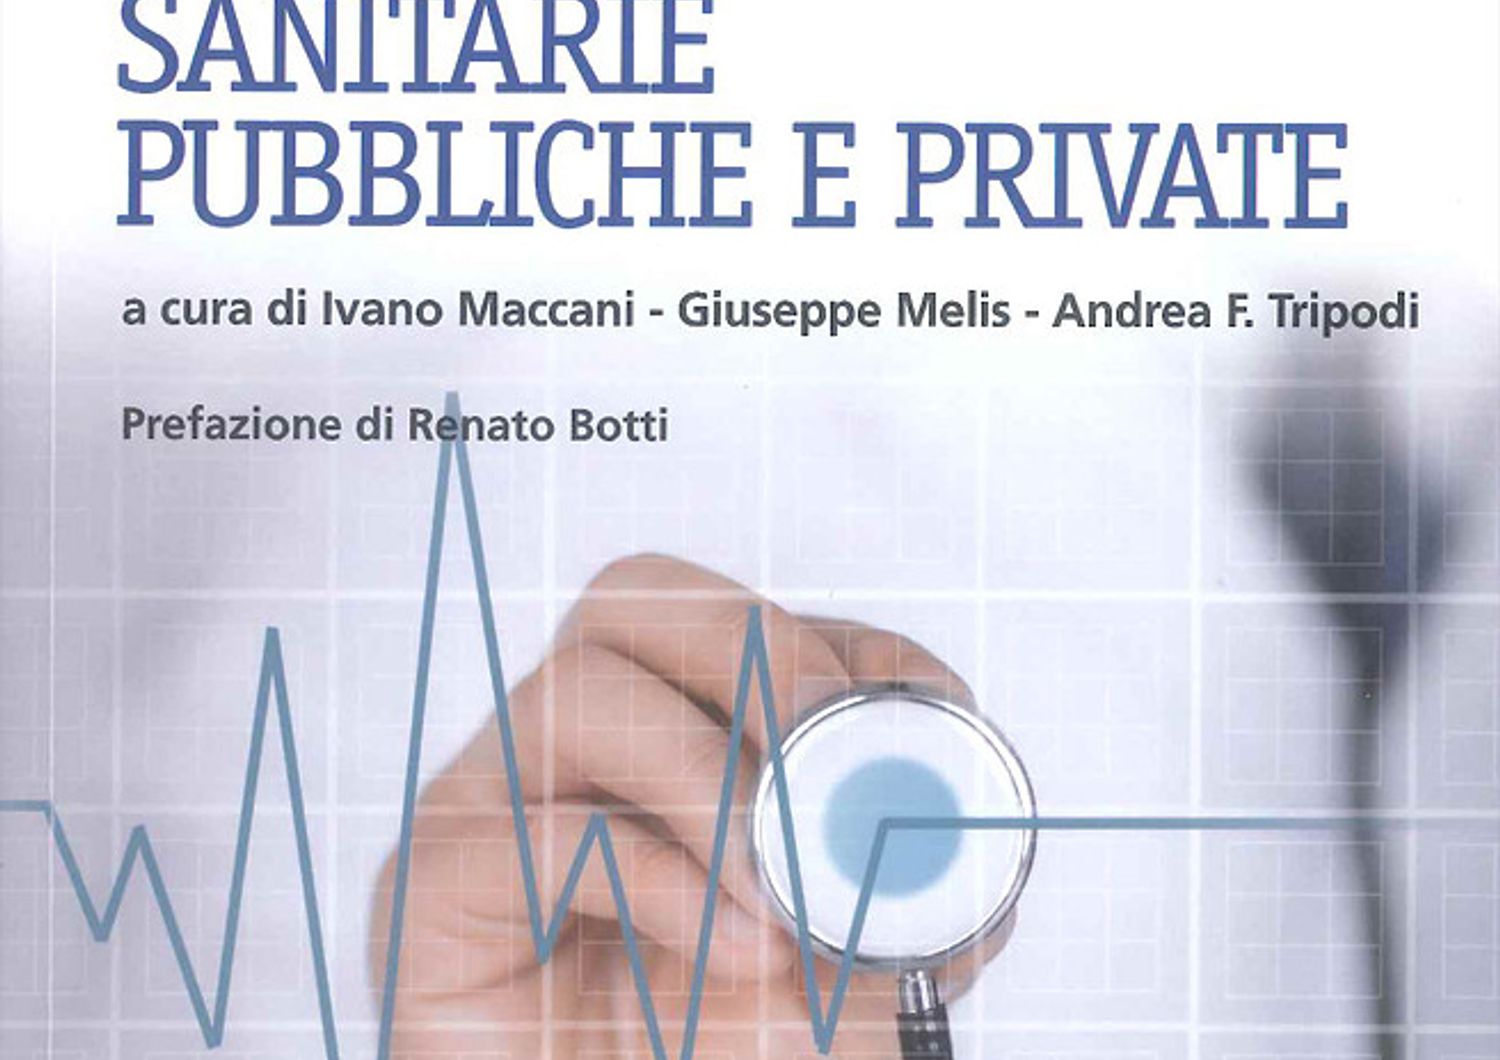 manuale anticorruzione nelle strutture sanitarie&nbsp;